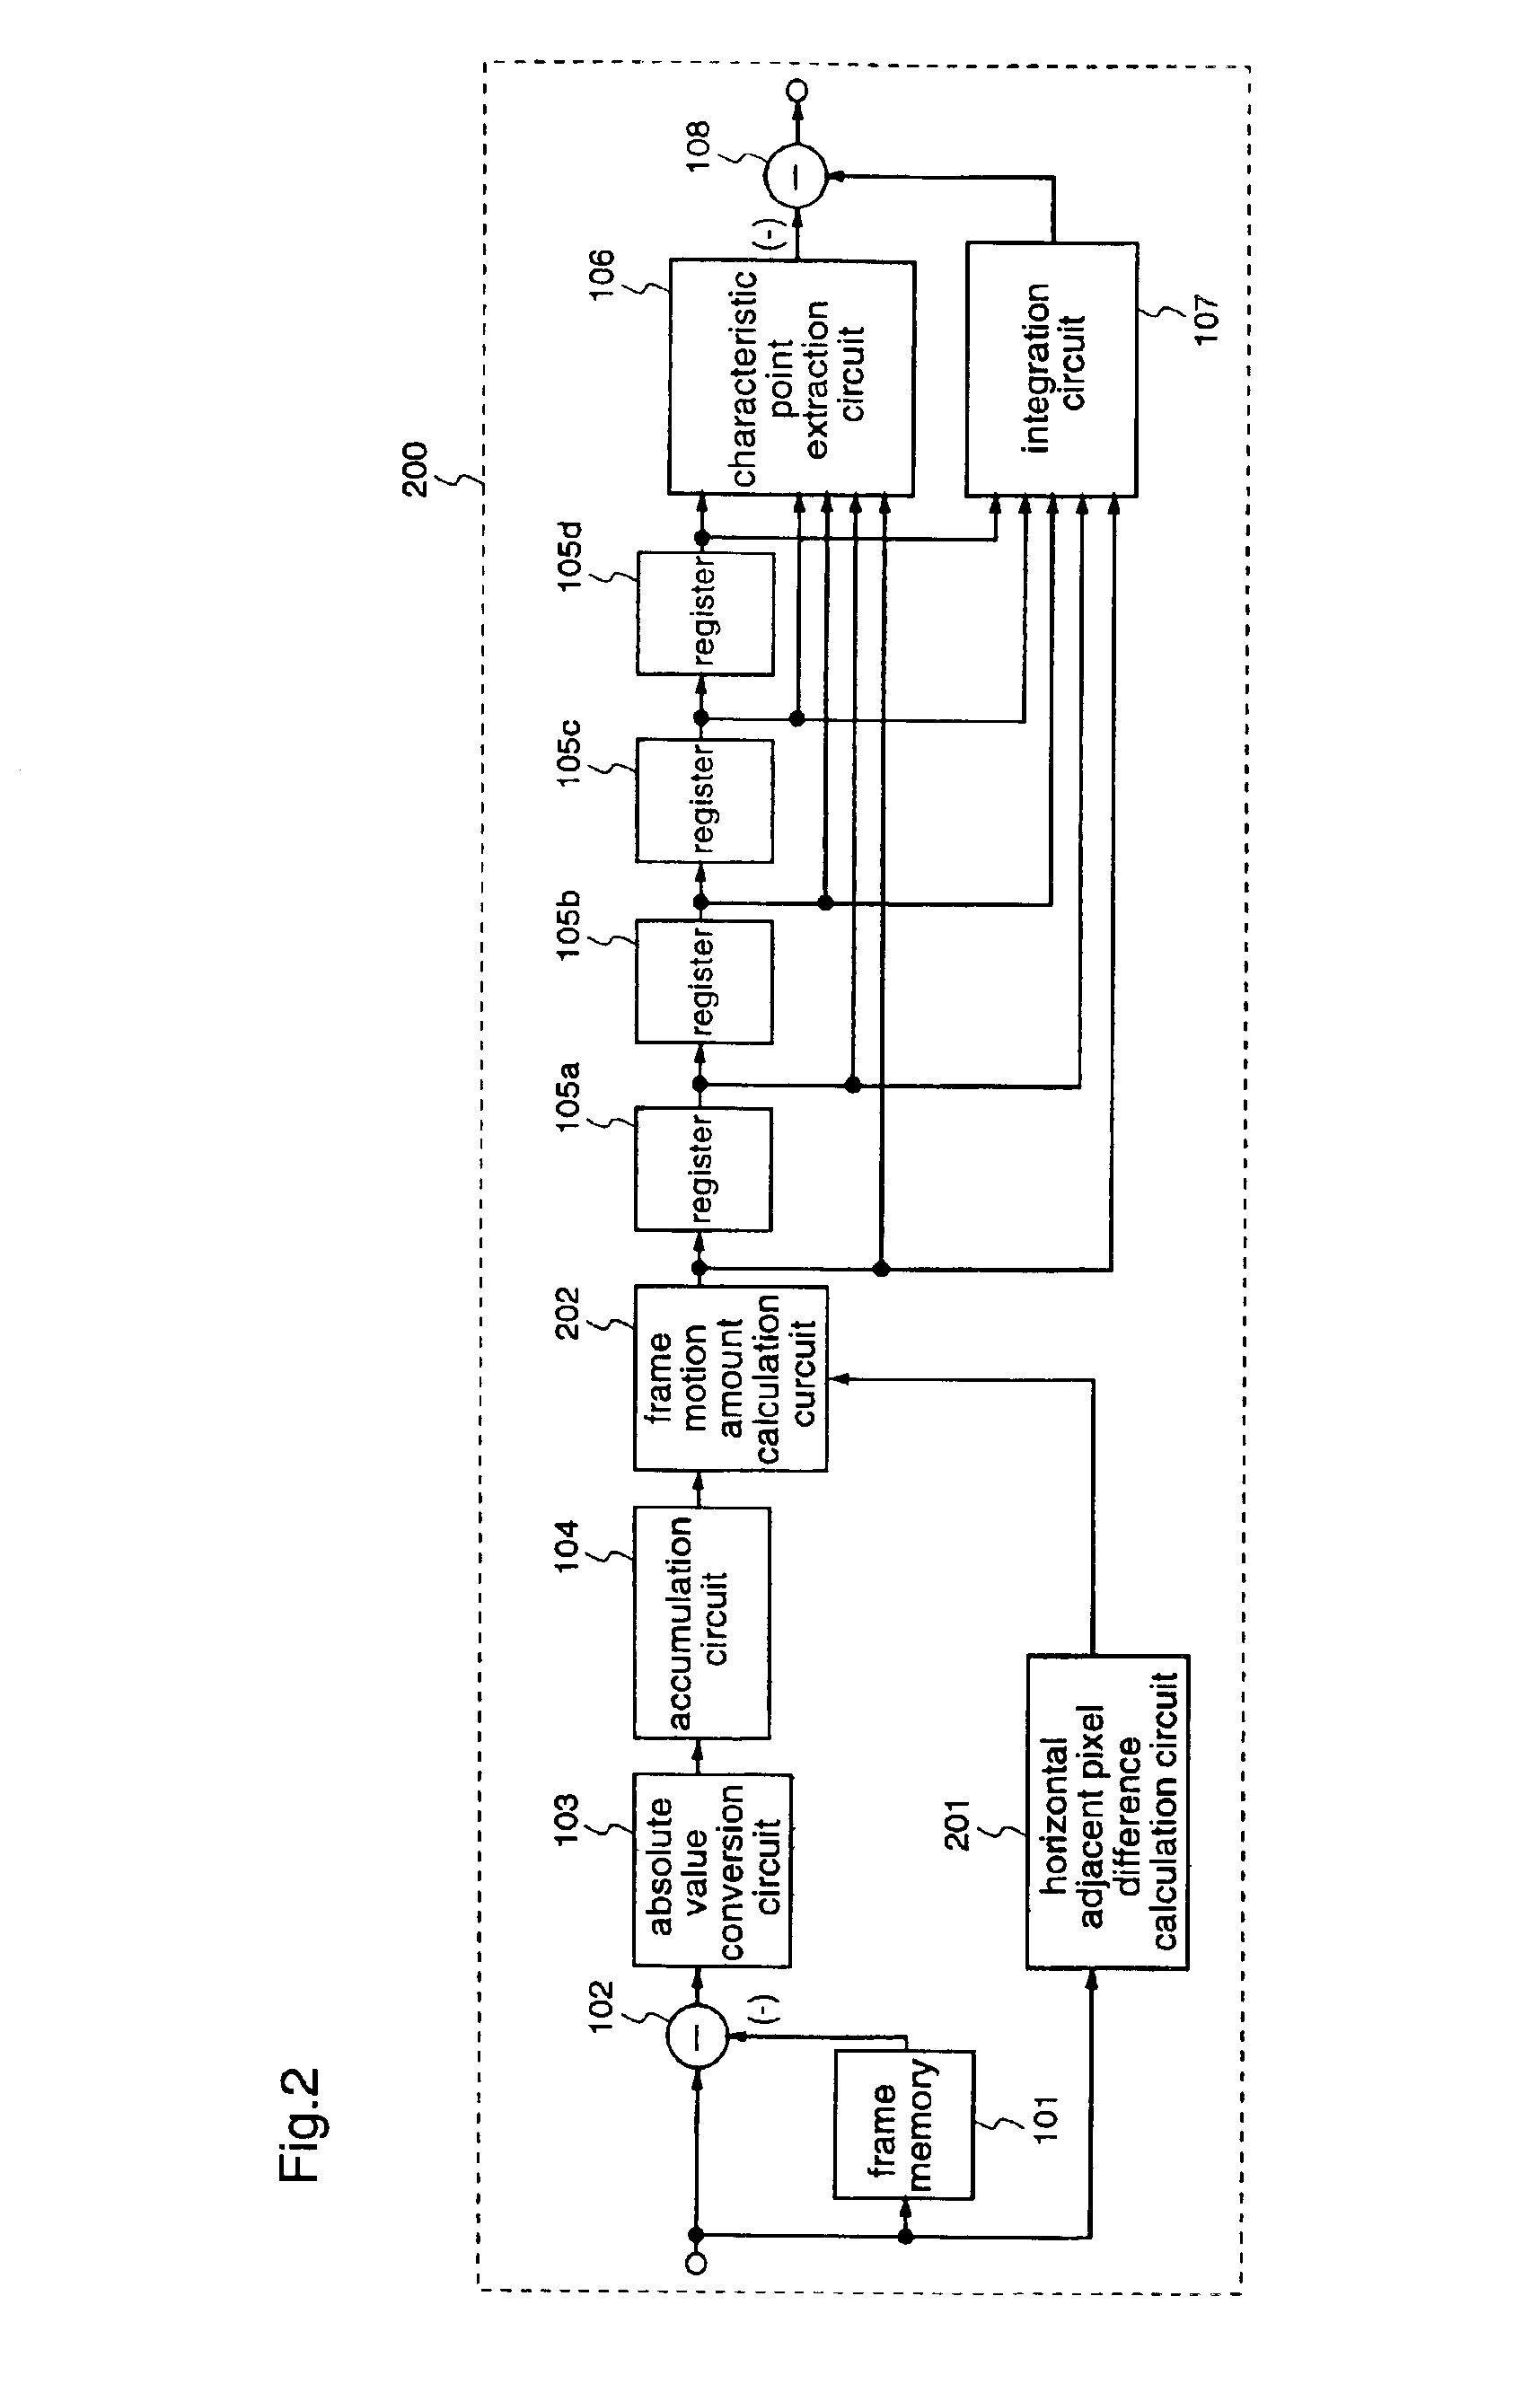 Image motion detecting circuit